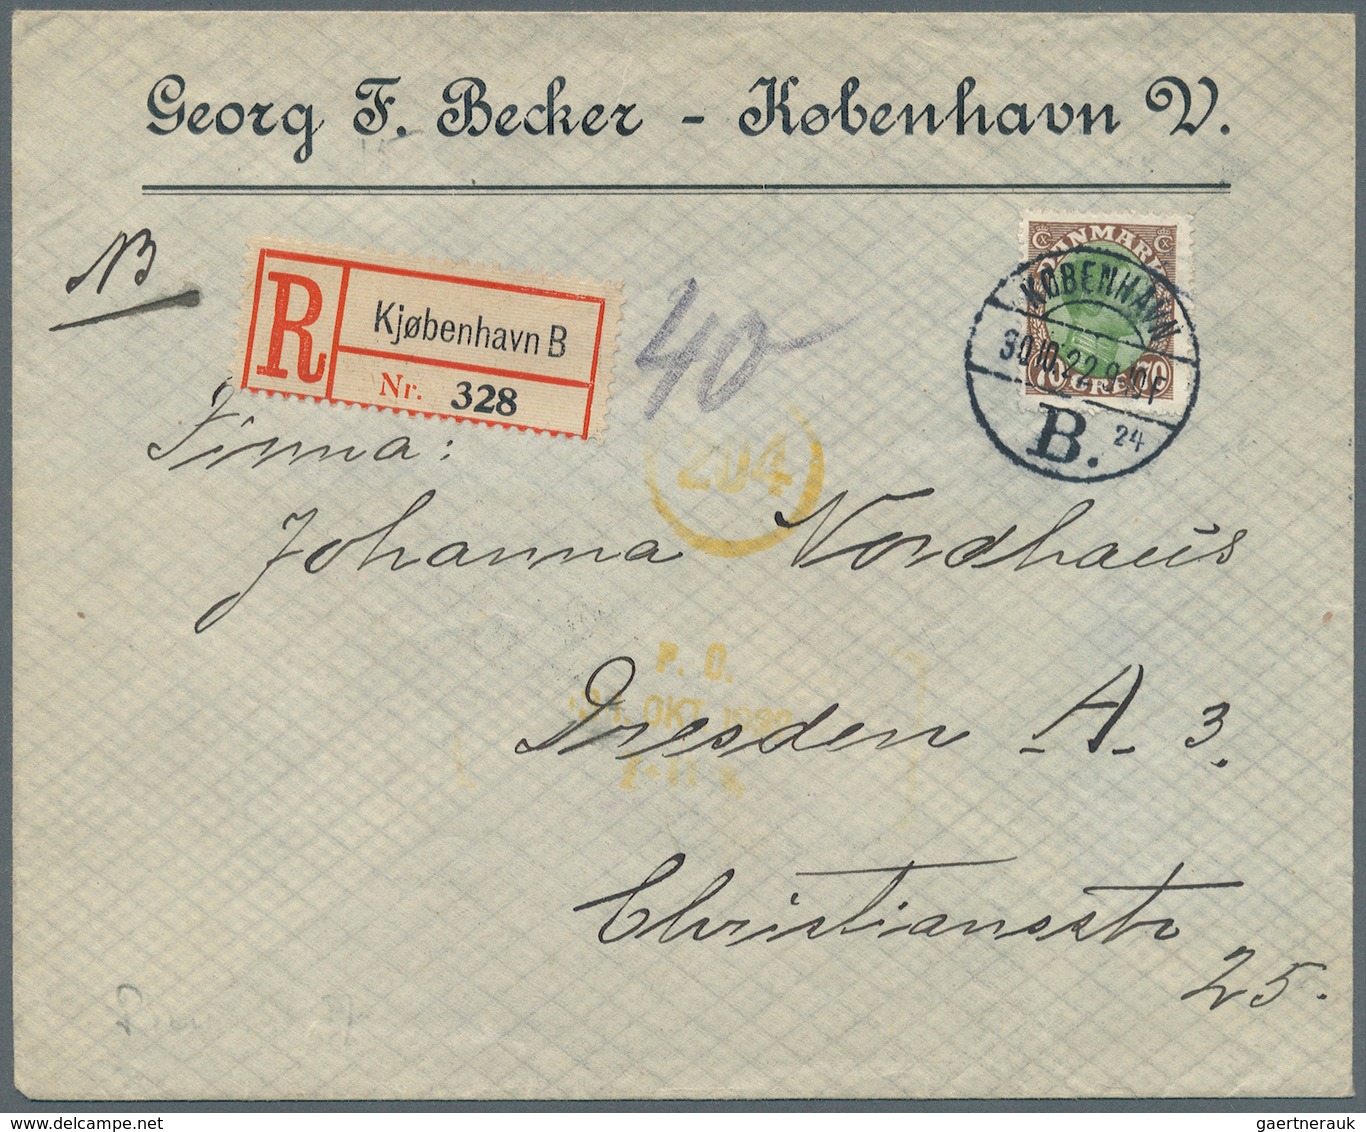 26238 Dänemark: 1908/1965 (ca.), Inter. Bestand Mit Ca. 110 Briefen Und Ansichtskarten Dabei Viele Bessere - Lettres & Documents